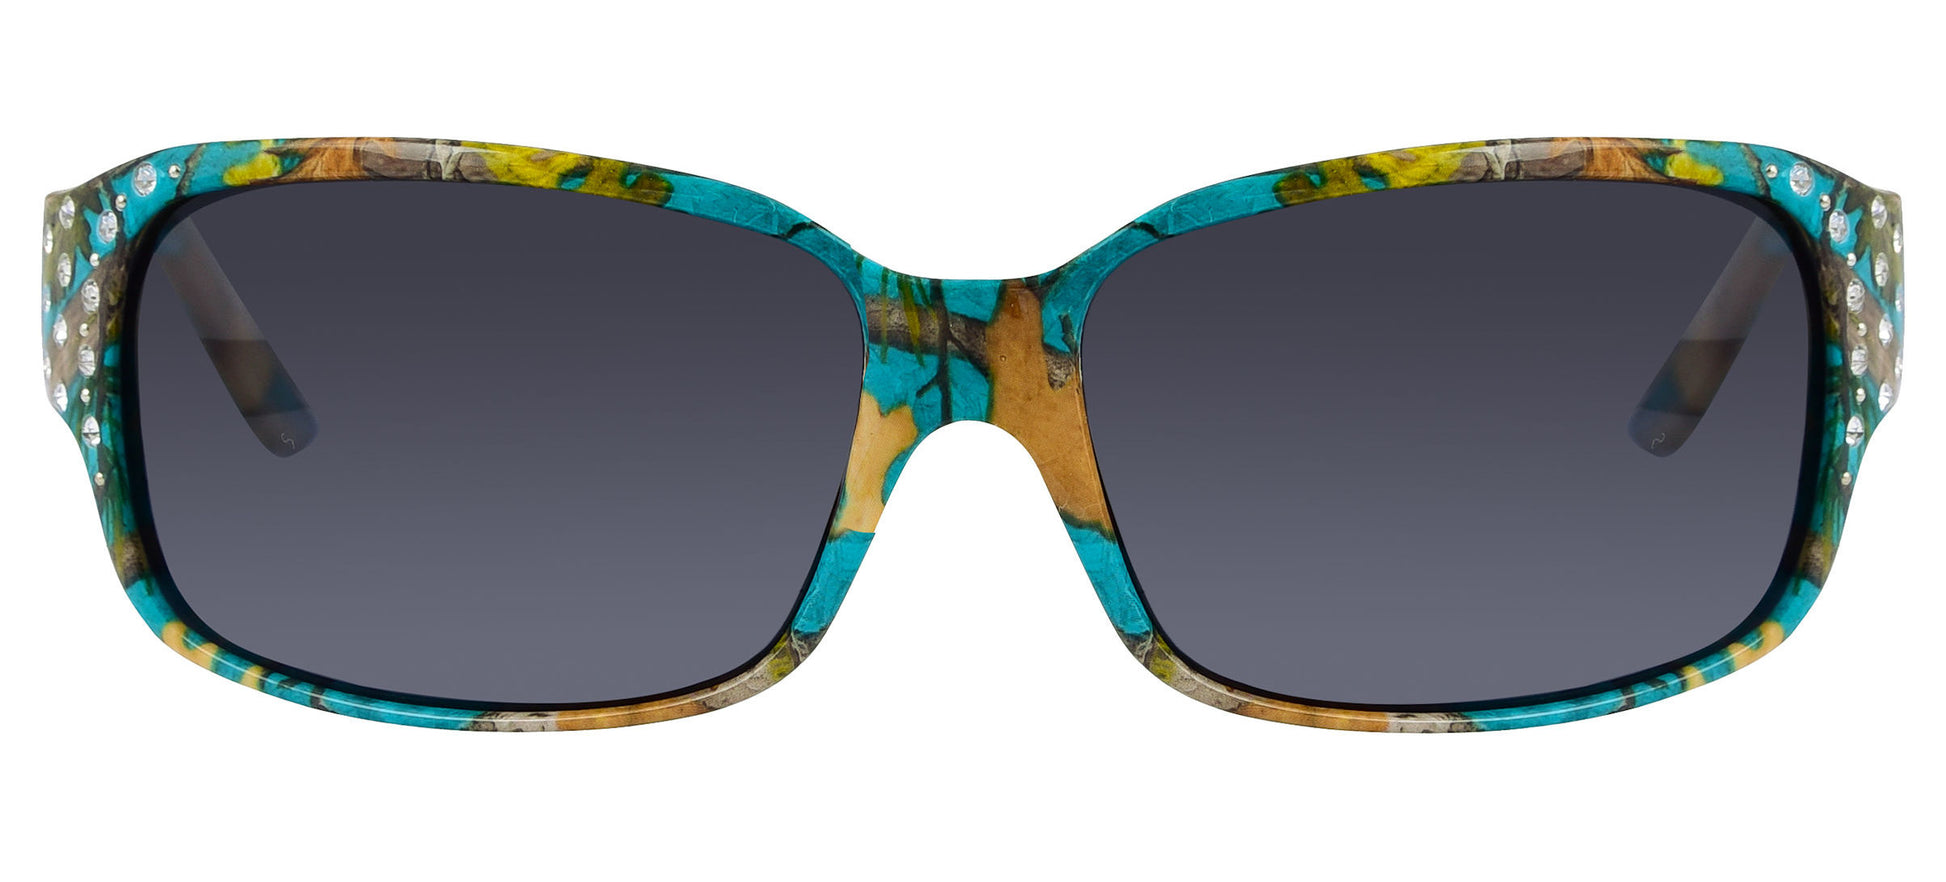 Third image: Polarized Teal Camo Sunglasses for Women - Diamante - Teal Camo Frame - Smoke Lens